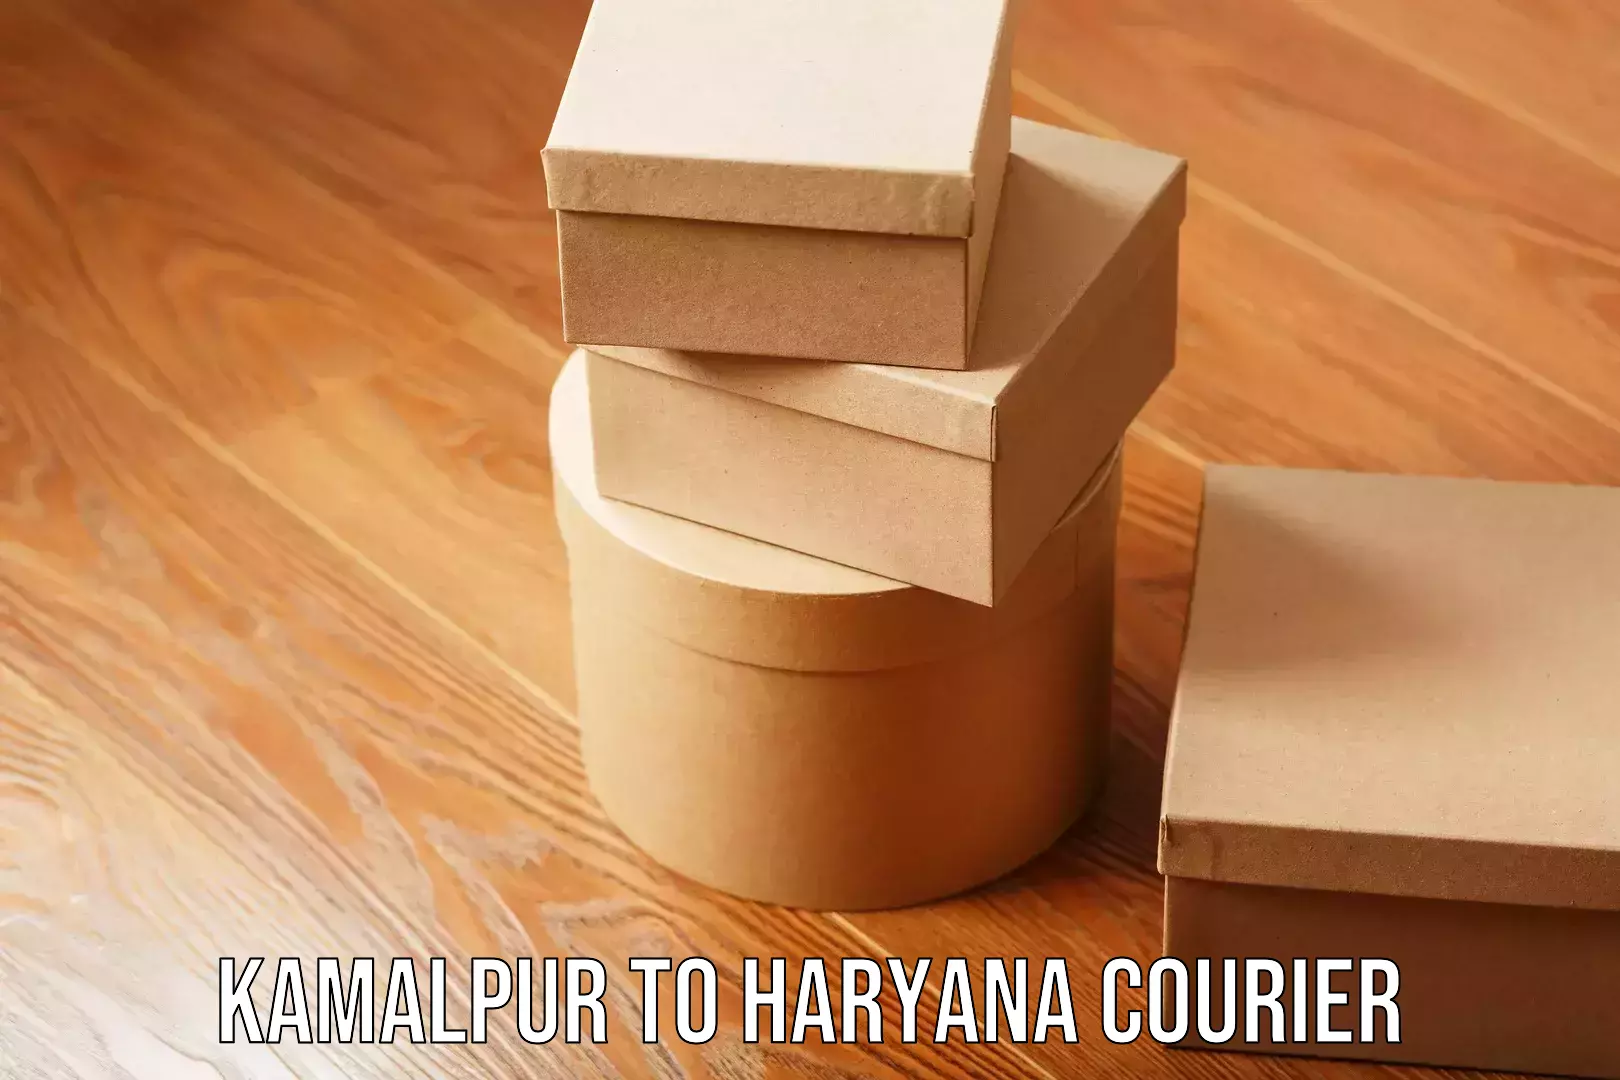 Supply chain delivery Kamalpur to Haryana